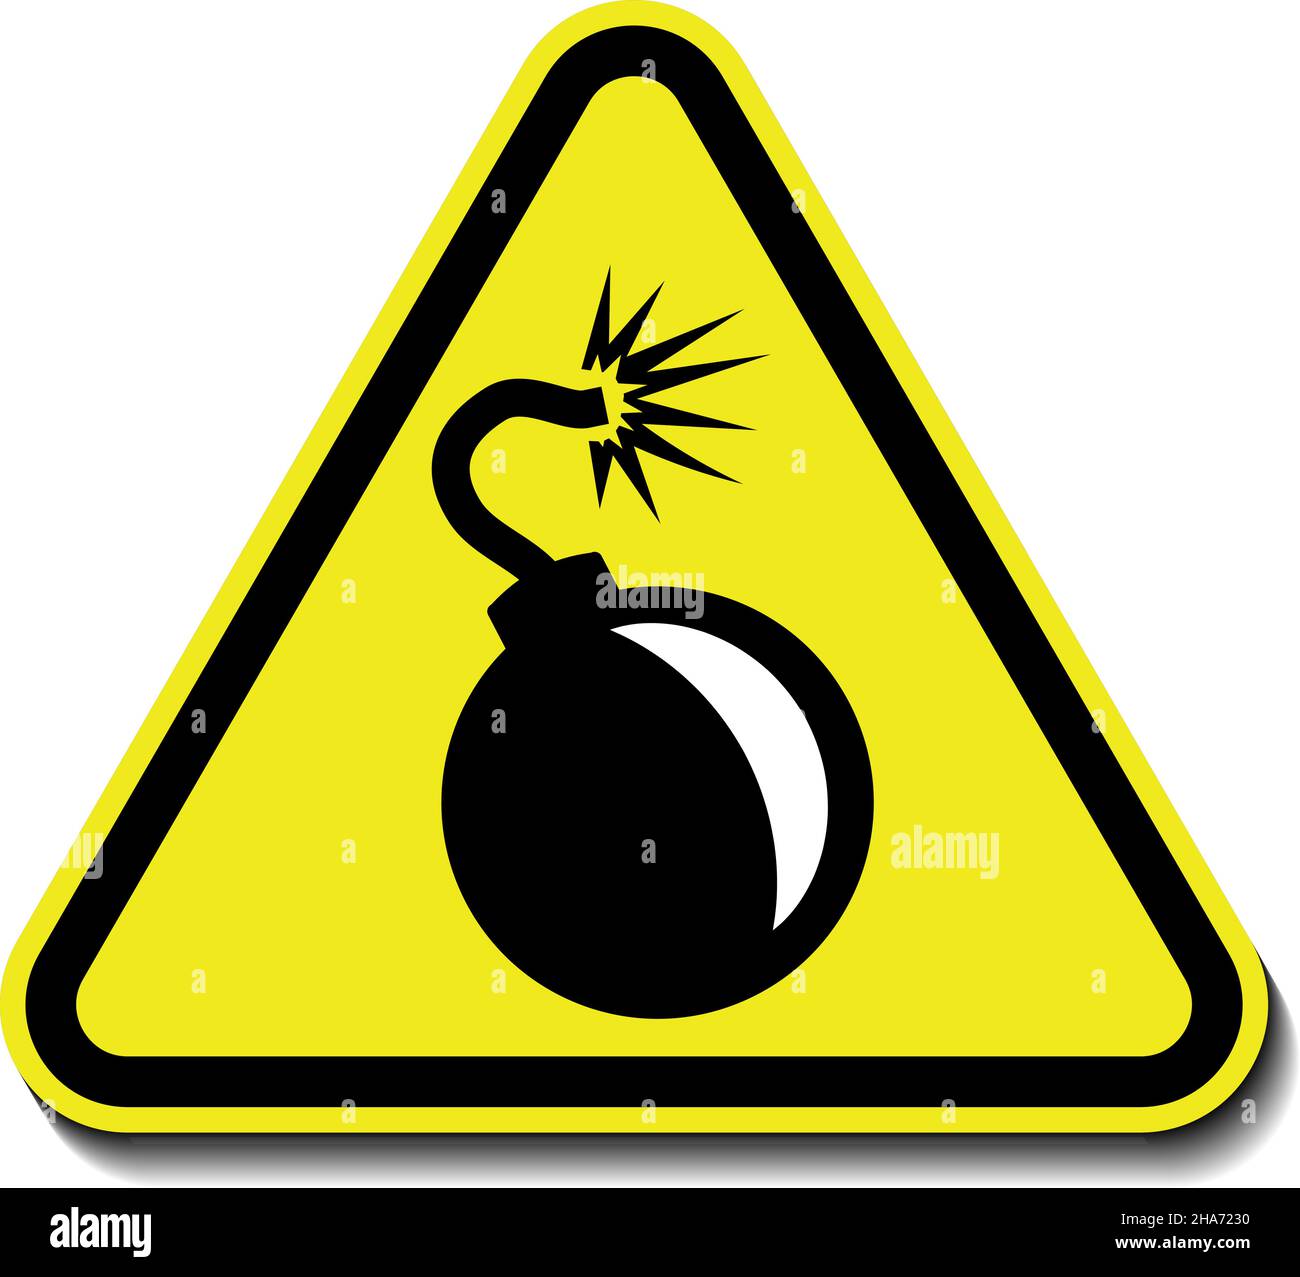 Bombenwarnschild, Explosionsgefahr. Gelbes Dreieck Warnsymbol, Vektorsymbol, isoliert auf weißem Hintergrund Stock Vektor